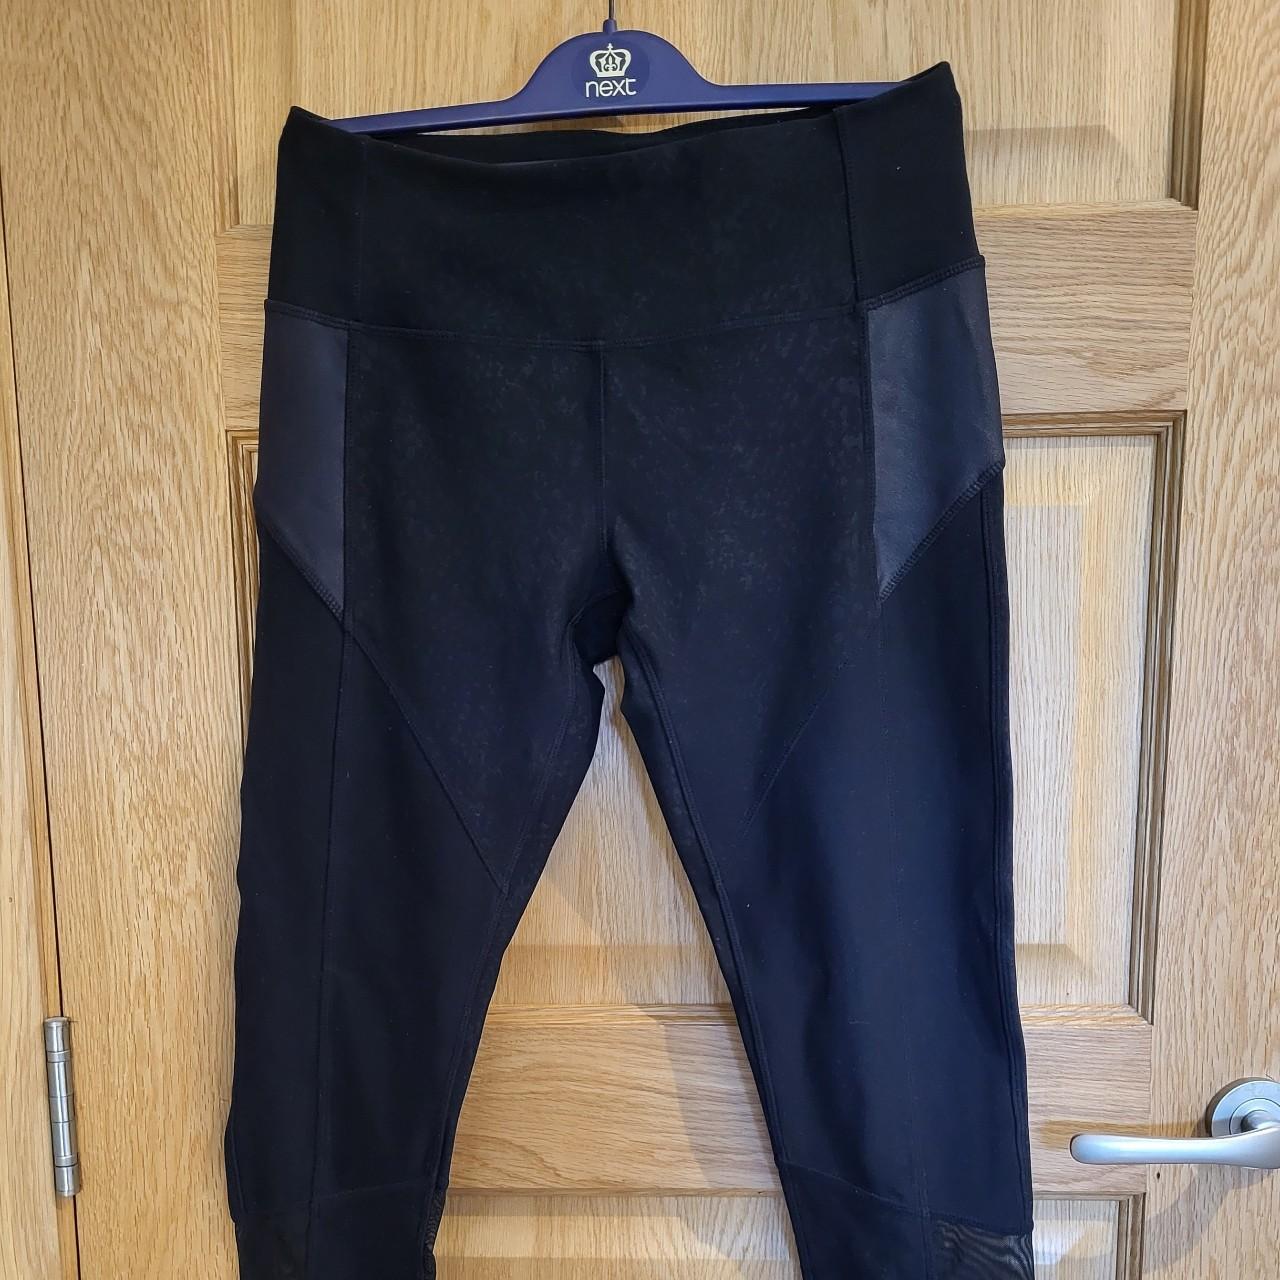 Black leggings - super warm and comfy 🌸Size: UK10 - Depop